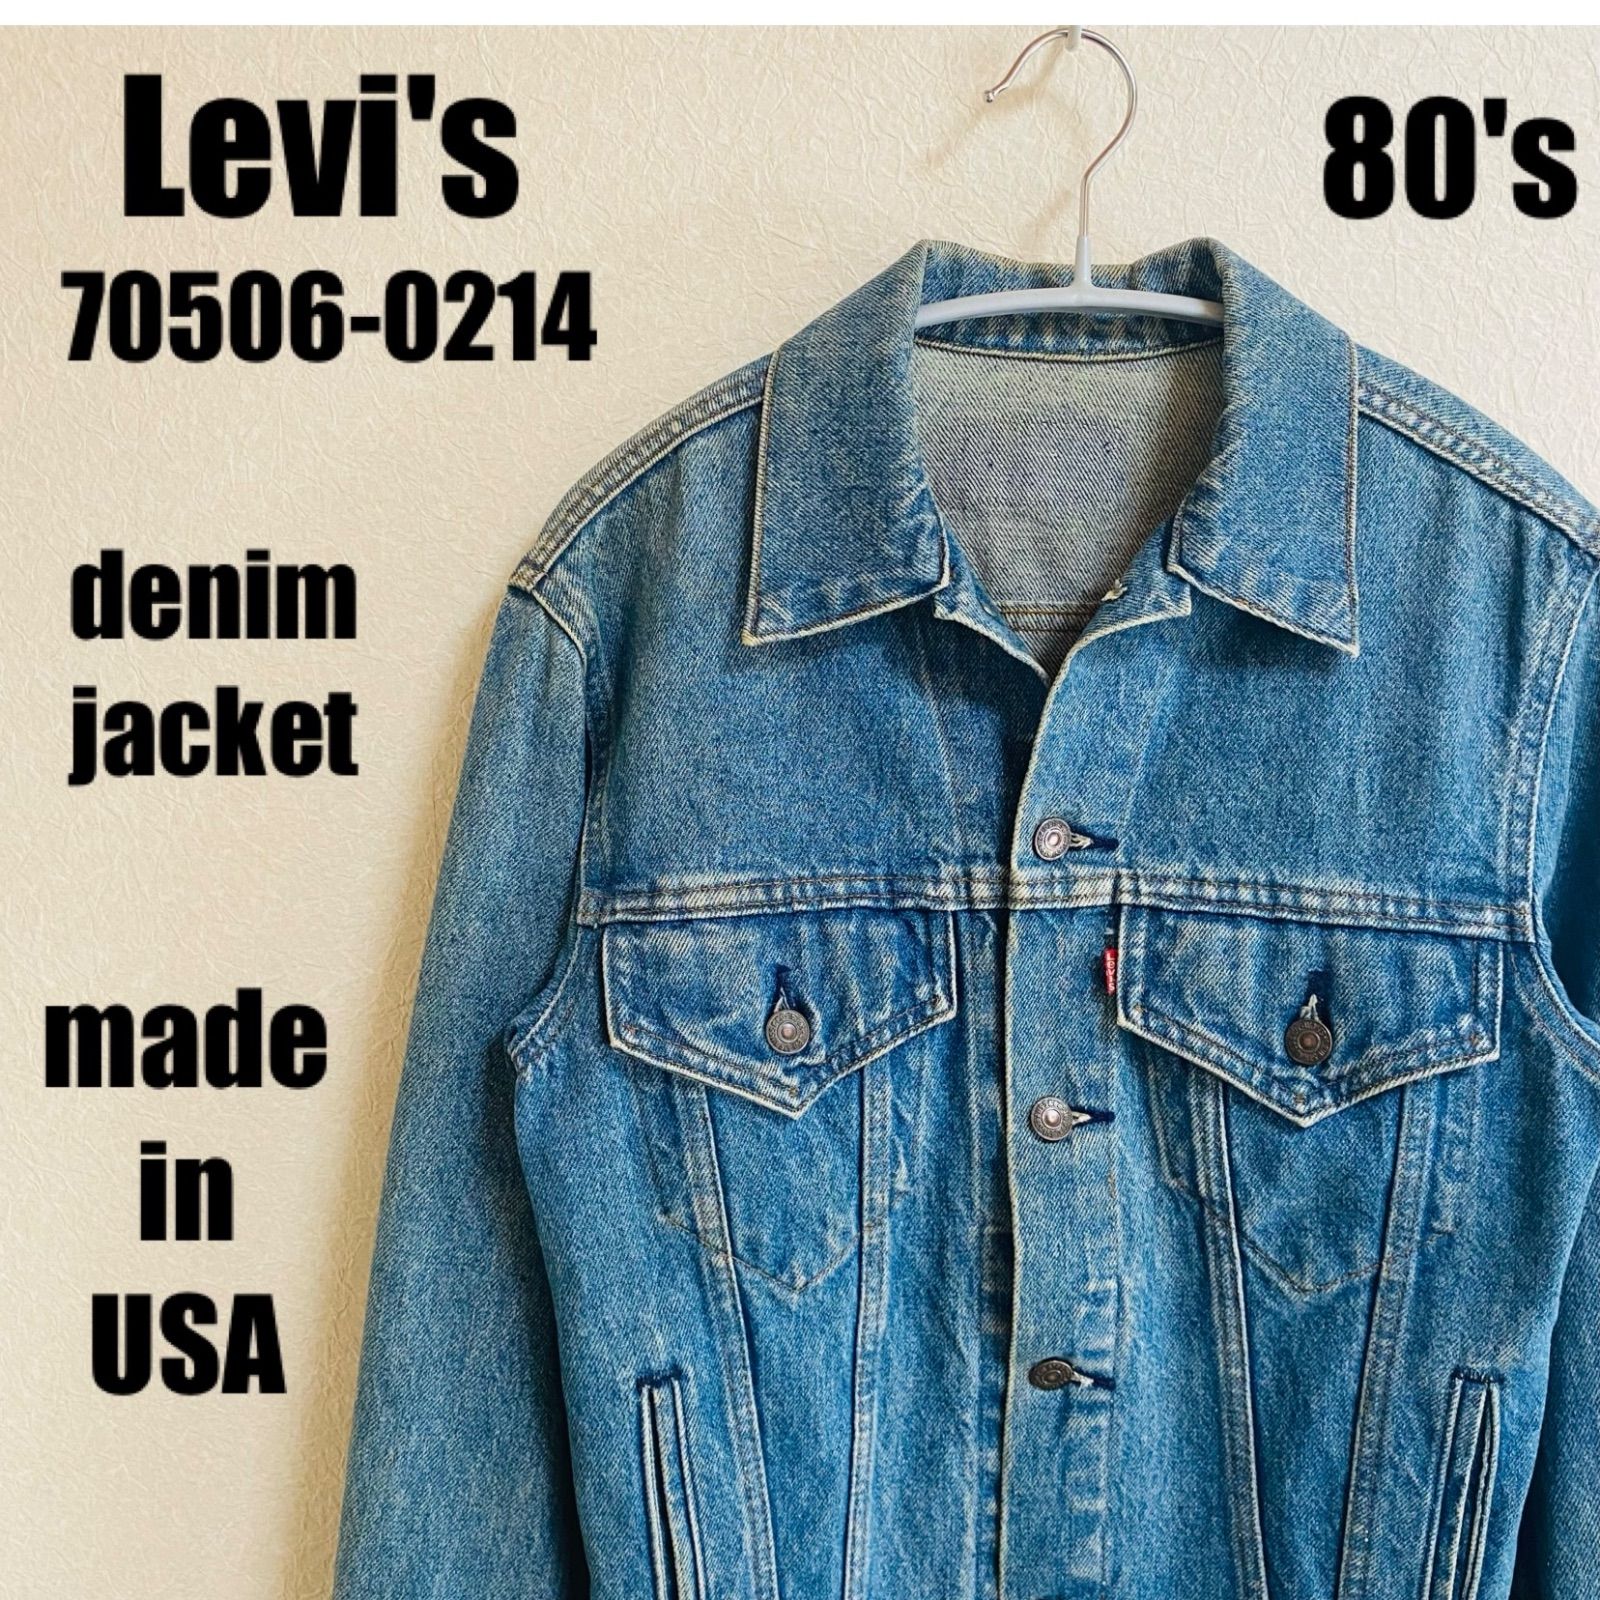 80s リーバイス Levi's デニムジャケット Gジャン ジージャン 70506